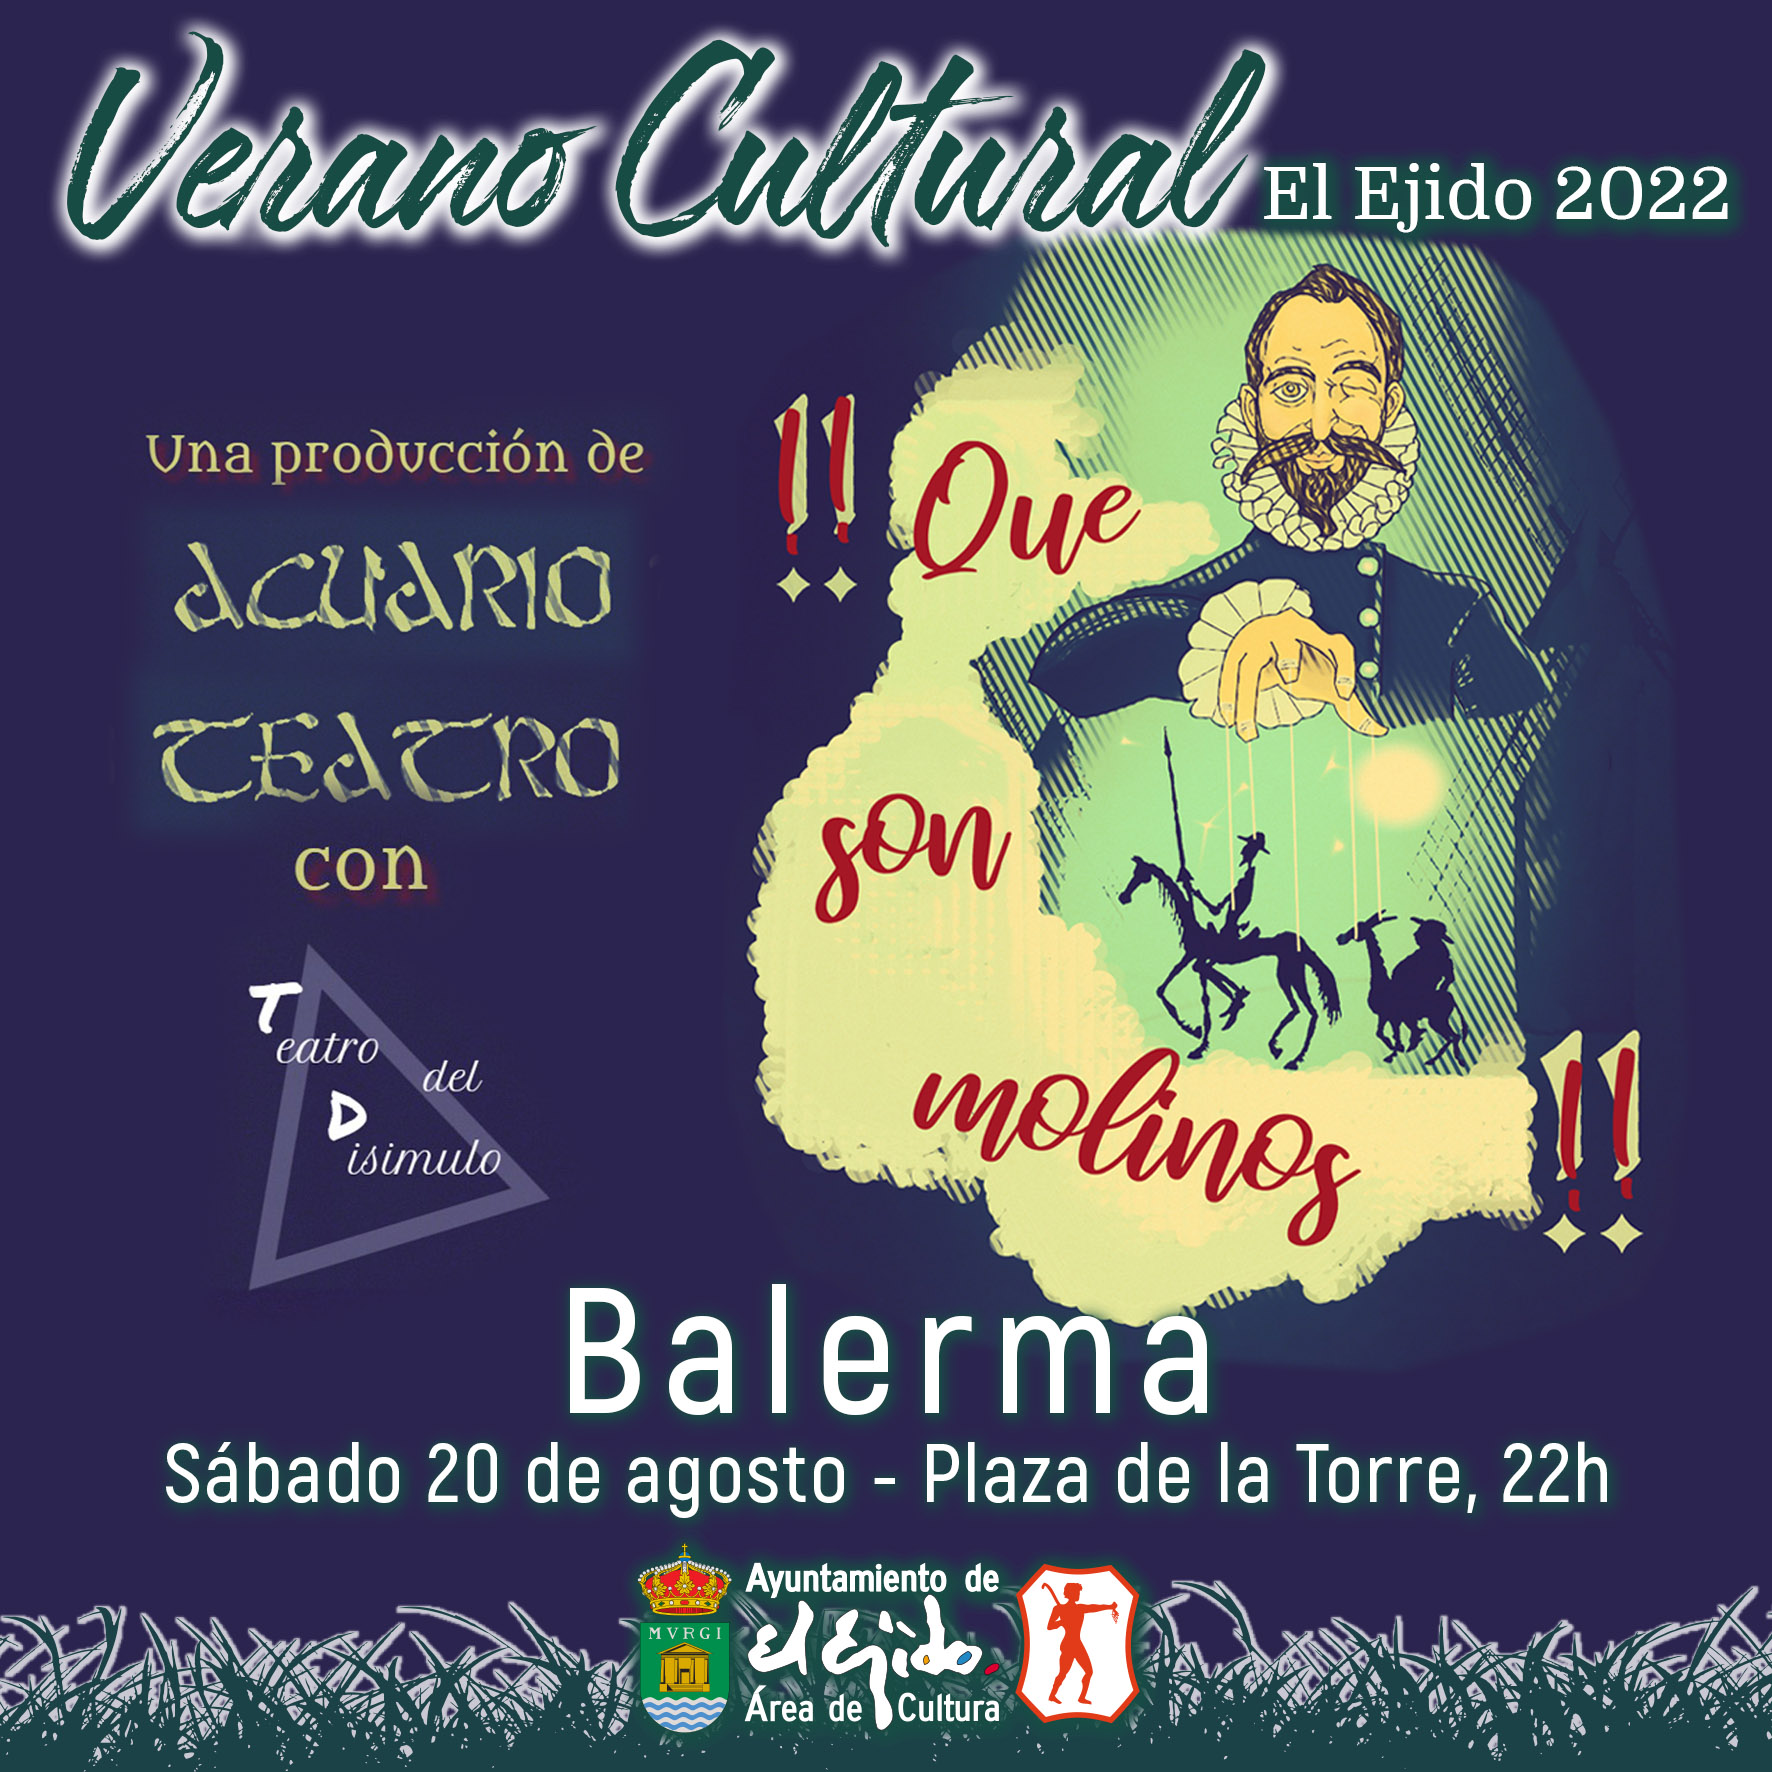 Verano Cultural 2022 de El Ejido – Teatro en Balerma – Acuario Teatro con Teatro del Disimulo  «¡¡Que son molinos!!»